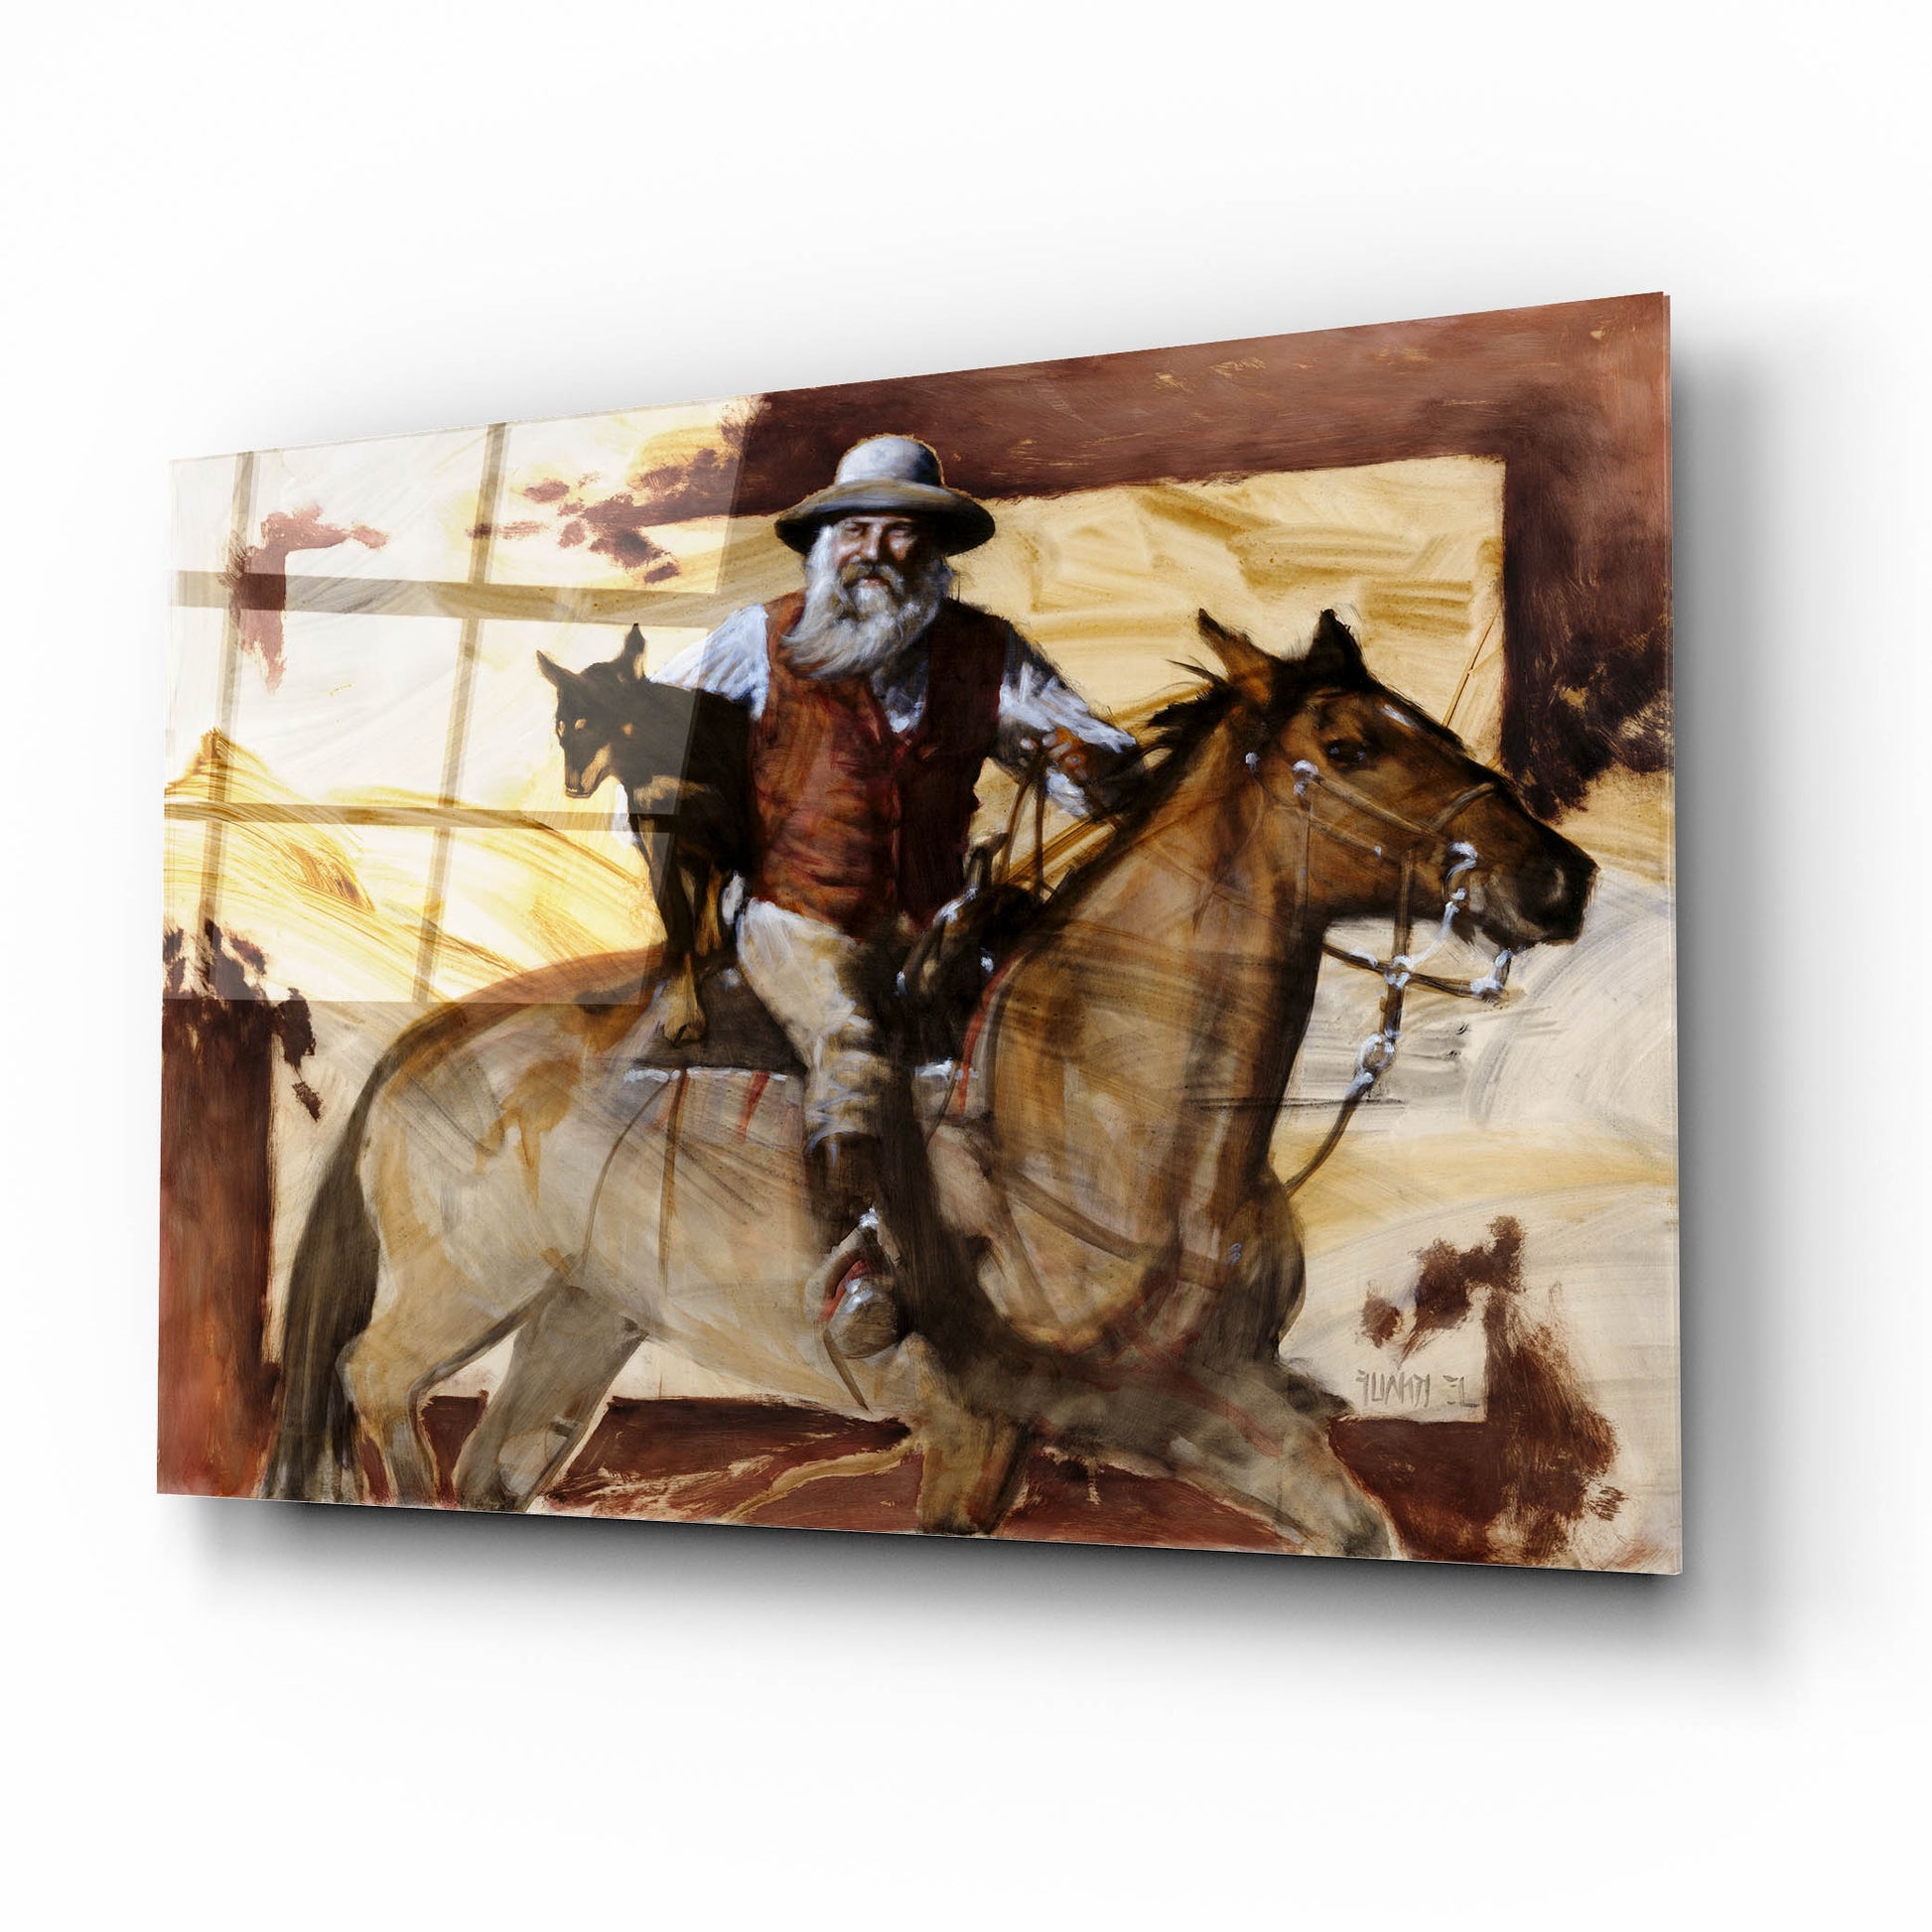 Epic Art 'Hitchin' A Ride' by J. E. Knauf, Acrylic Glass Wall Art,16x12